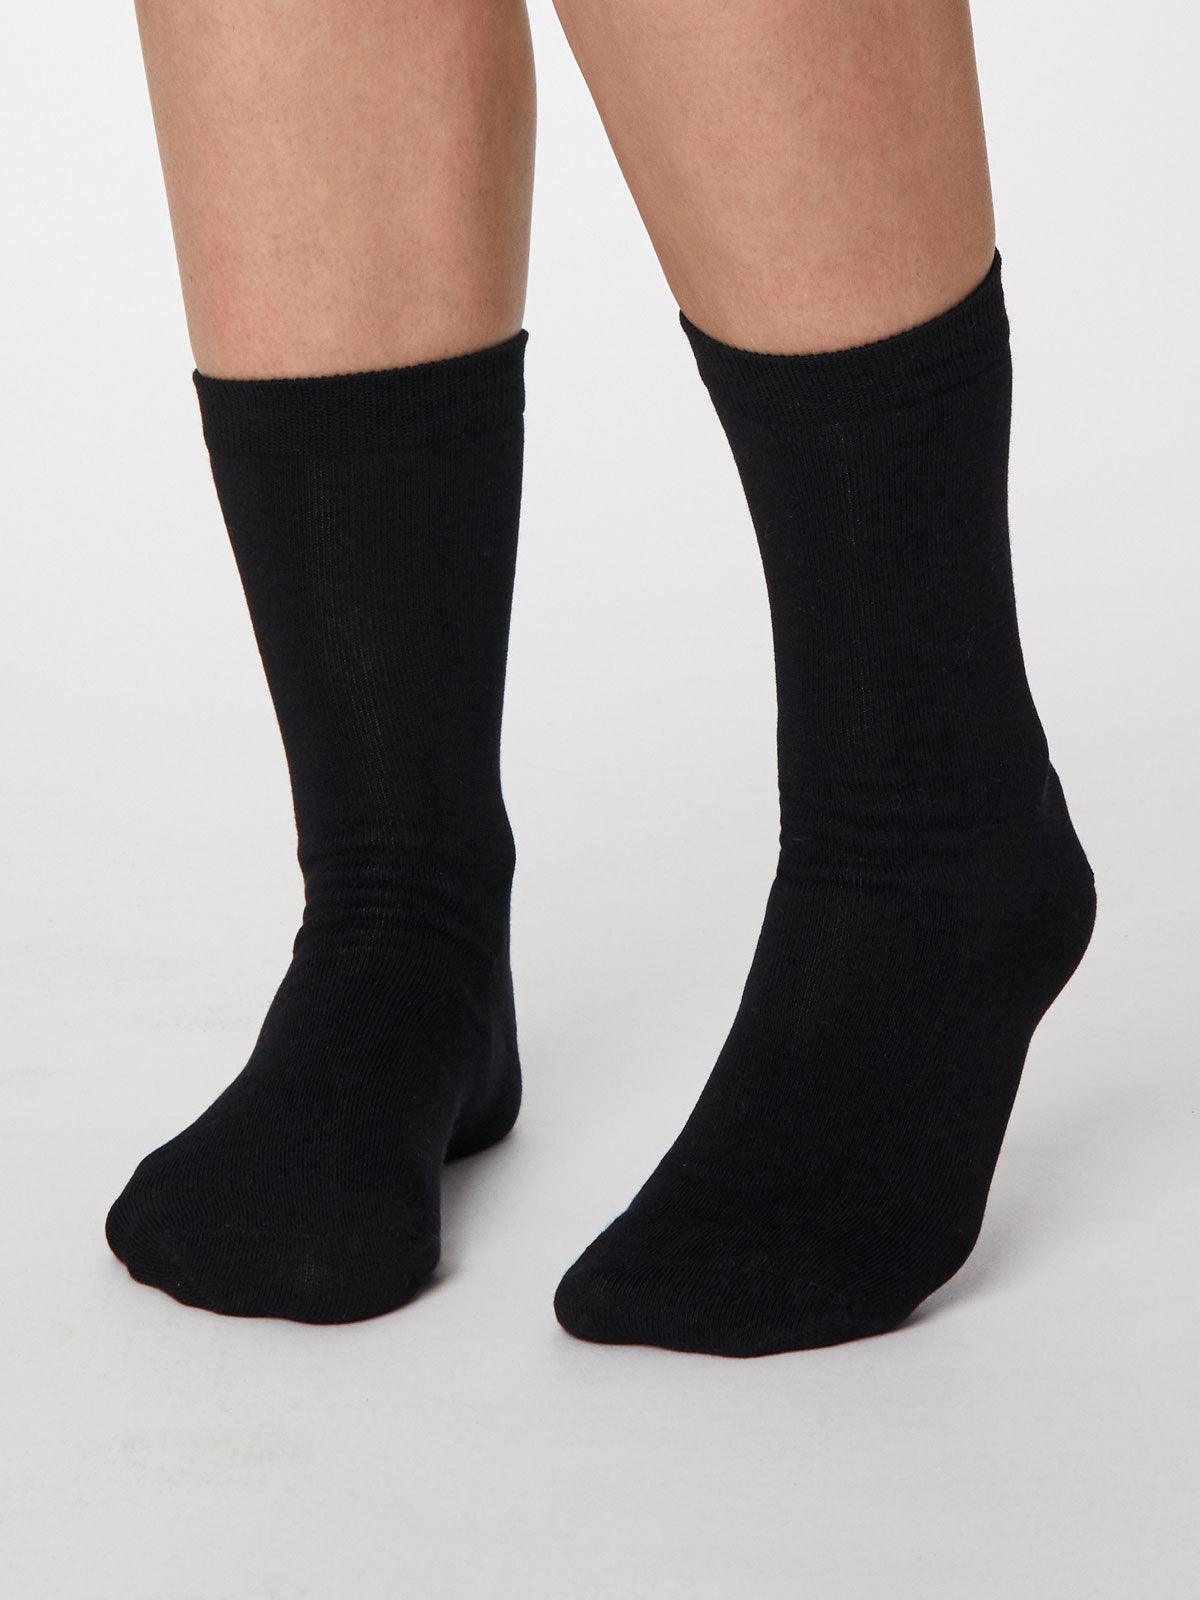 Solid Jackie Socks - Black - Thought Clothing UK